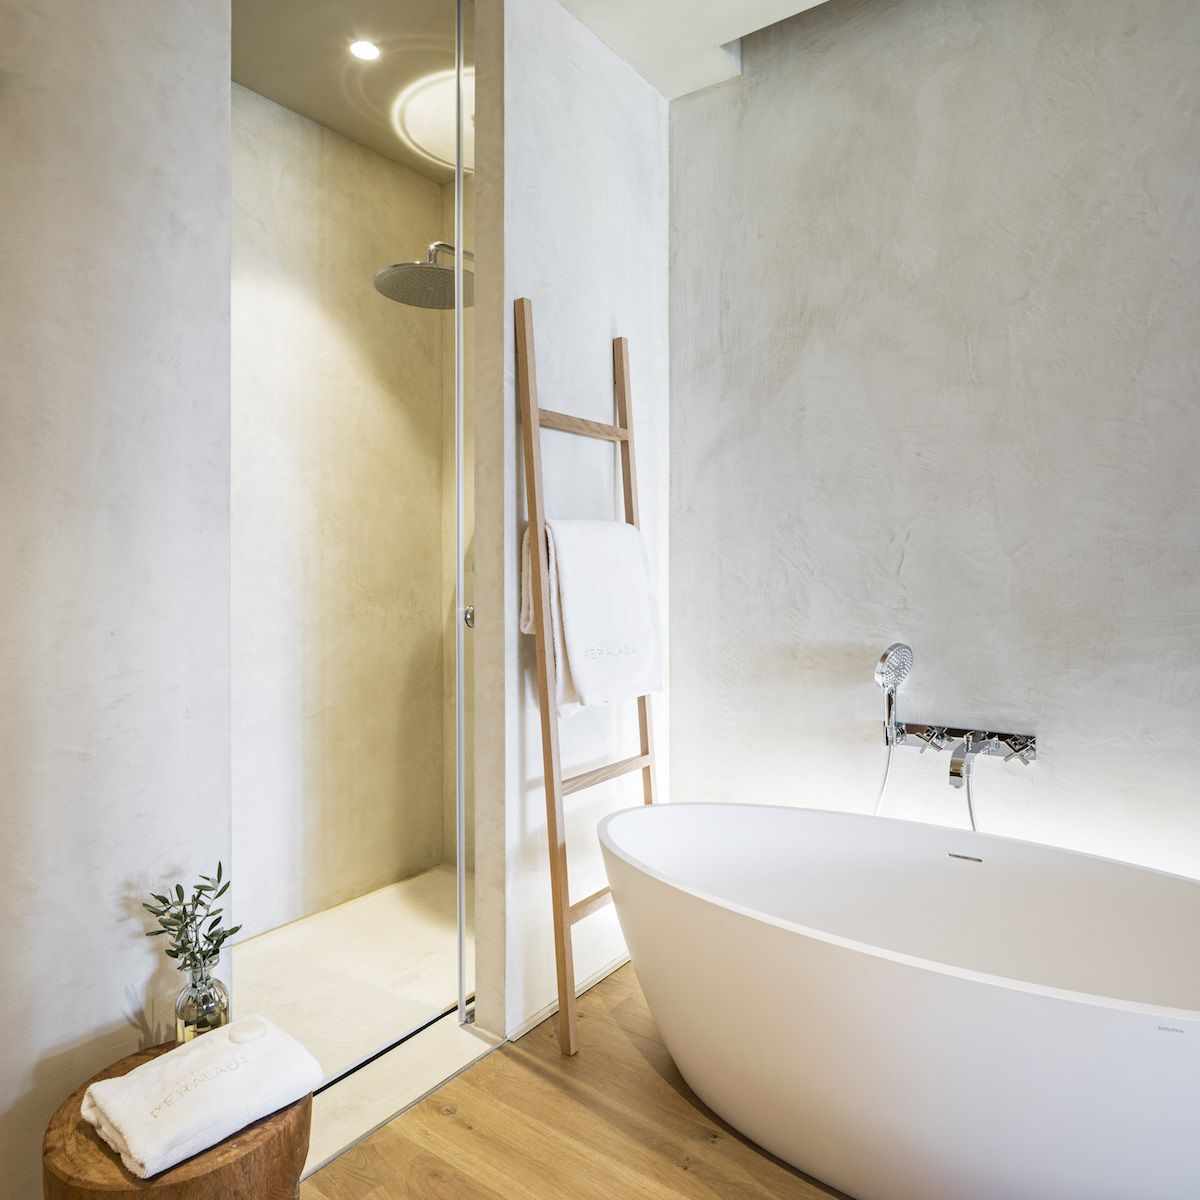 הרעיון להשתמש בטיח דקורטיבי יפה בעיצוב חדר האמבטיה